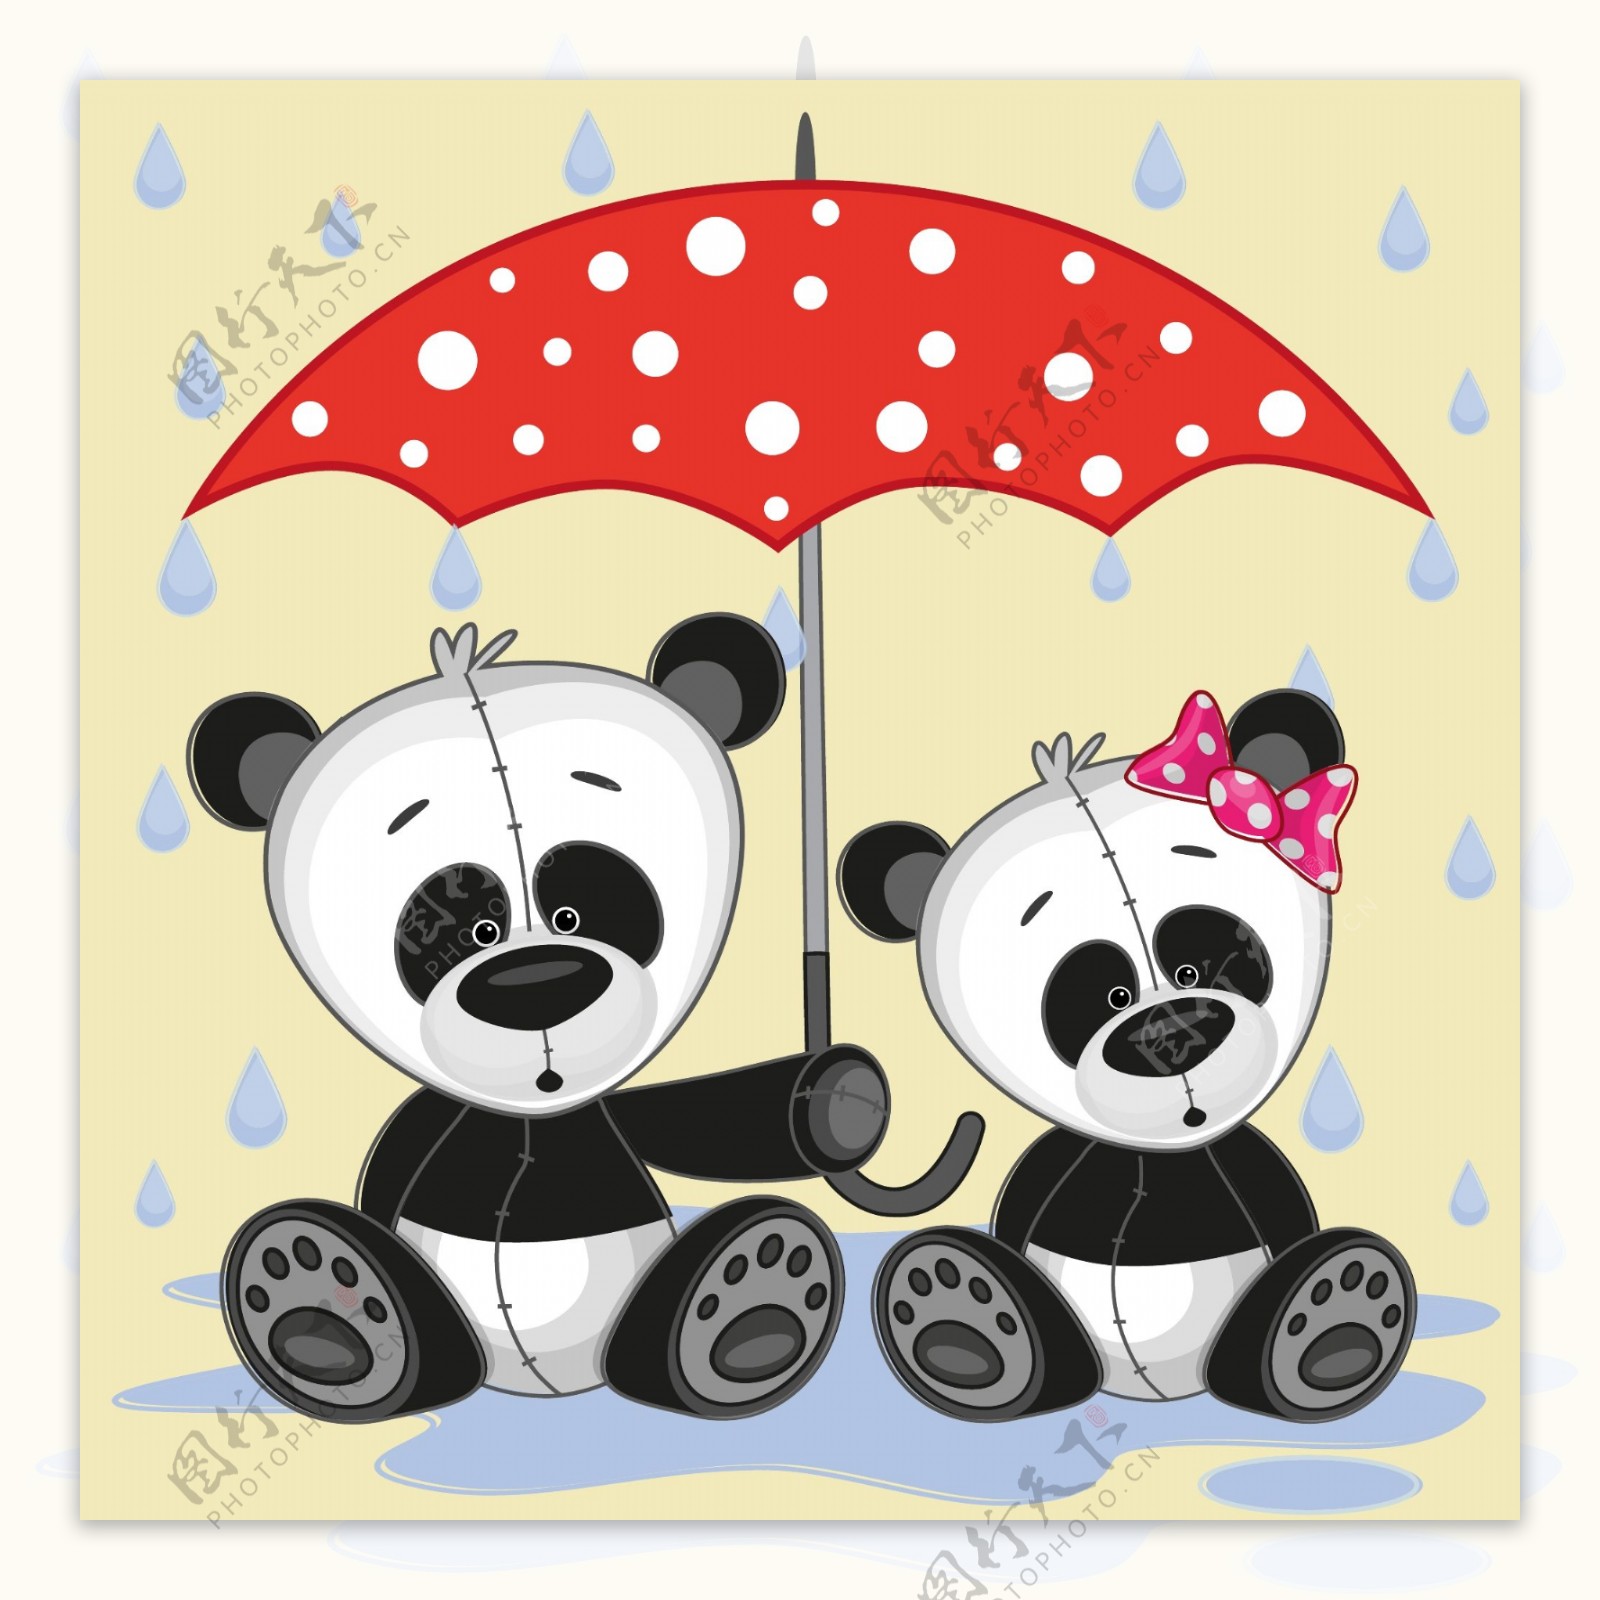 浪漫爱情熊猫卡通矢量素材